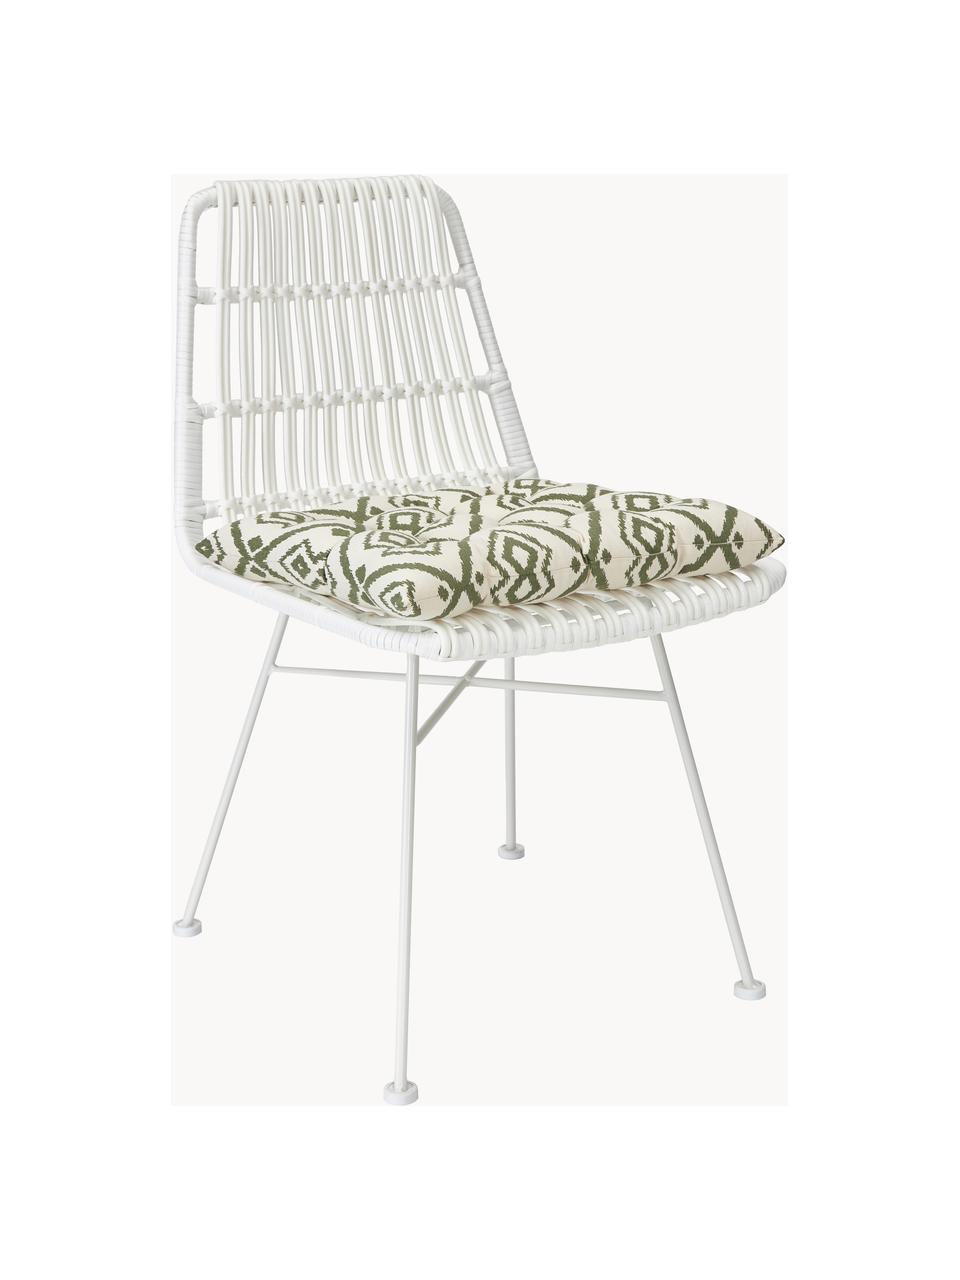 Poduszka na krzesło z bawełny Delilah, Oliwkowy zielony, S 40 x D 40 cm